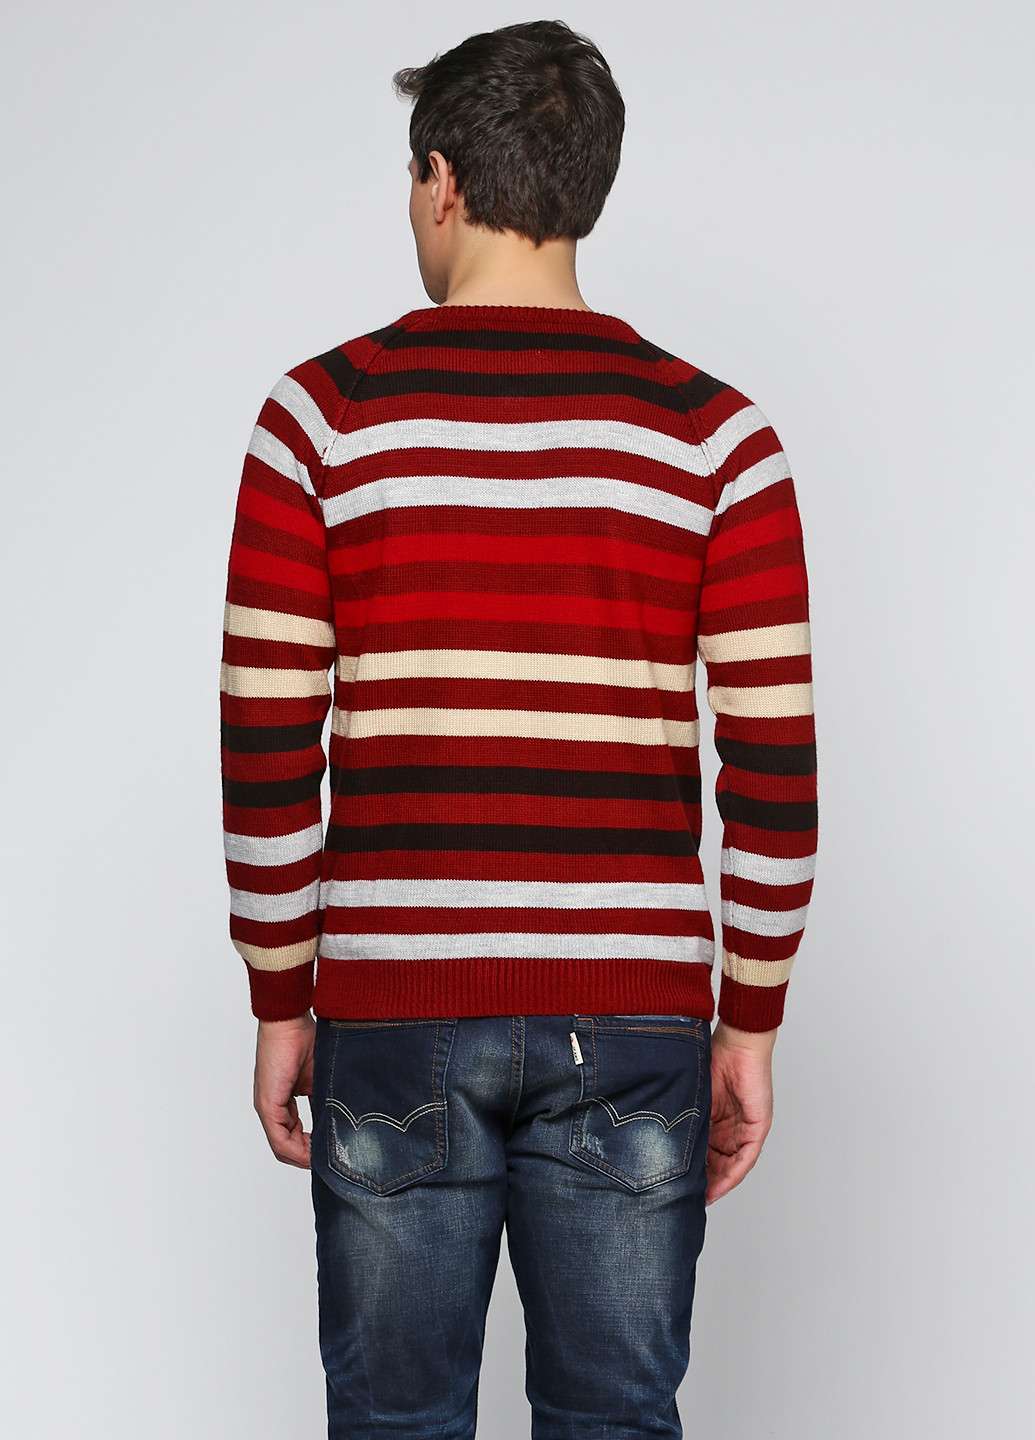 Красный демисезонный пуловер пуловер Яavin